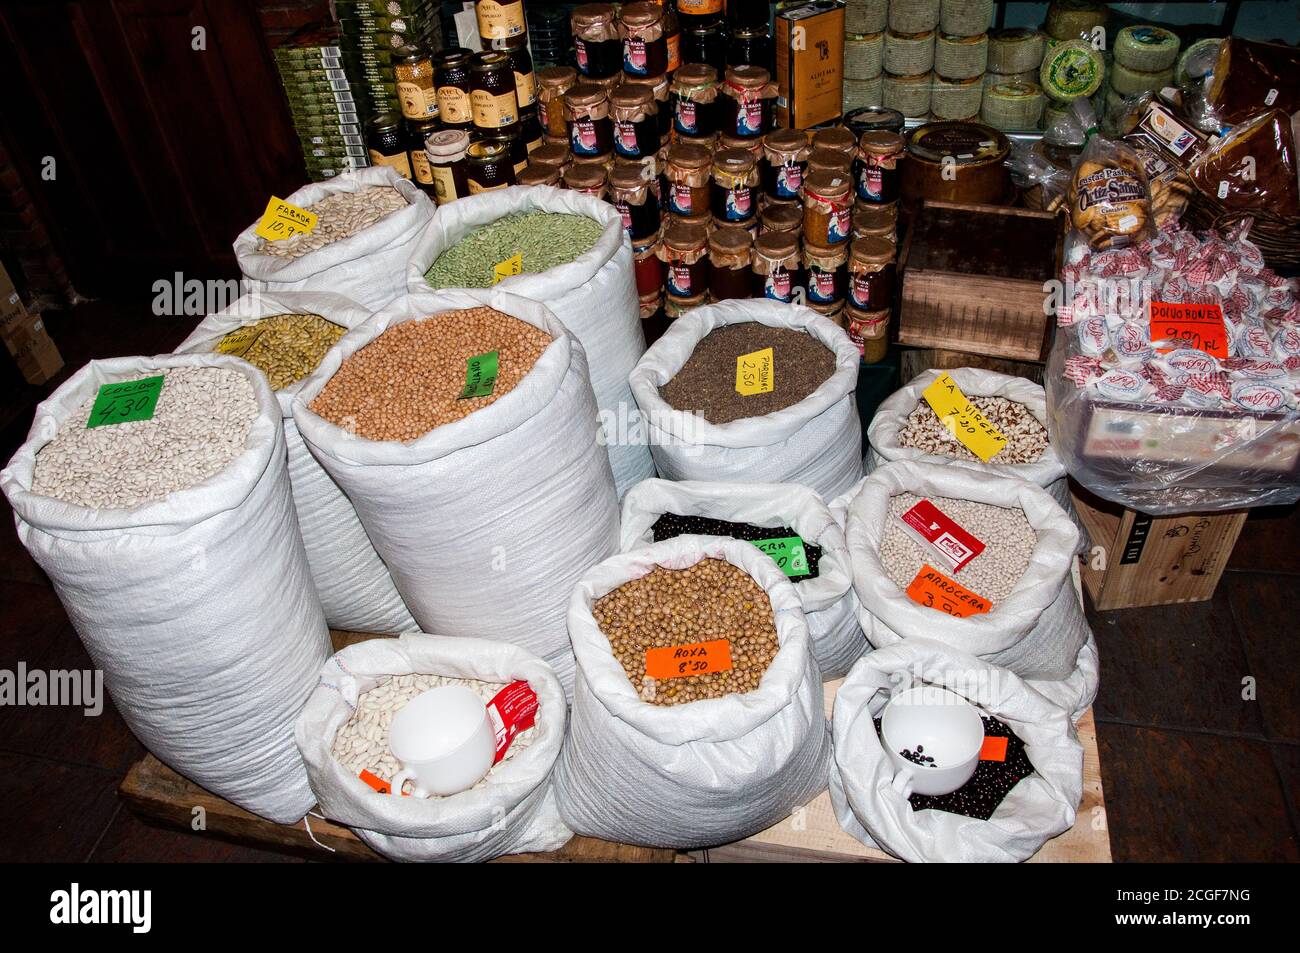 Varietà di sacchi pieni di fagioli che vengono venduti in un negozio locale vicino Asturias, Spagna. Foto Stock